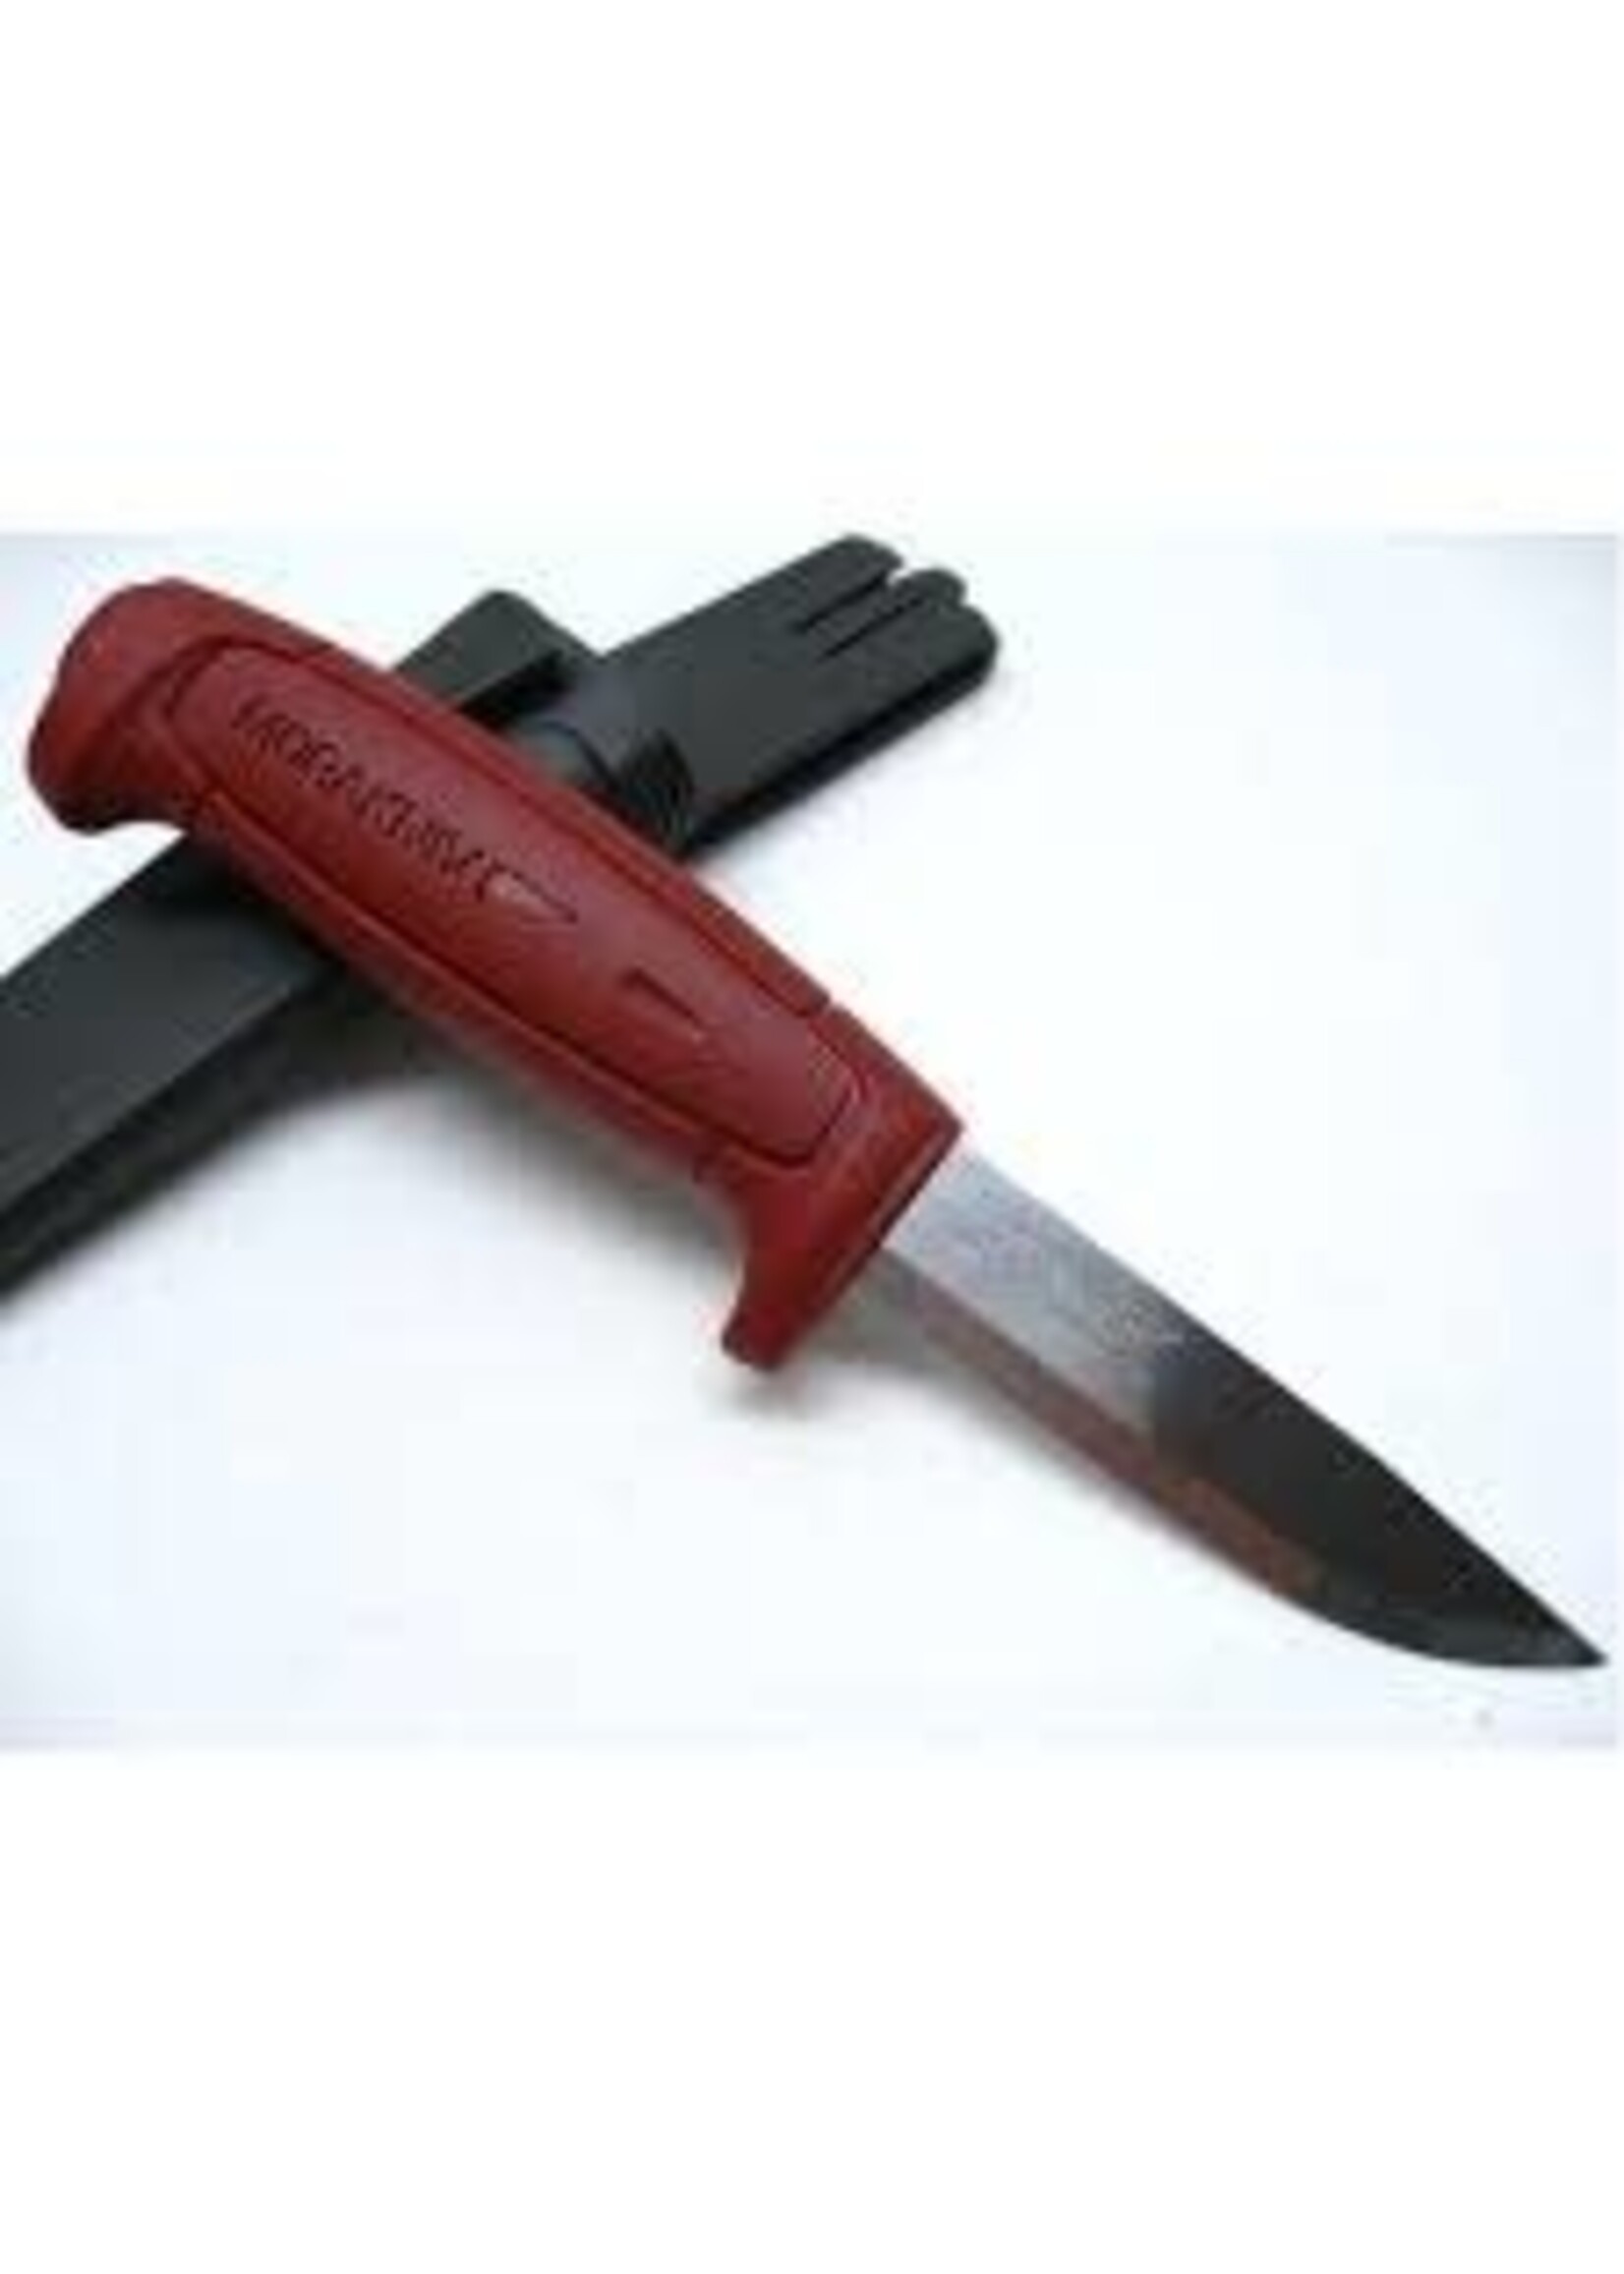 MORA SWEDEN MORAKNIV BASIC 511 HUNTING SURVIVAL KNIFE CARBON STEEL RED FT01502